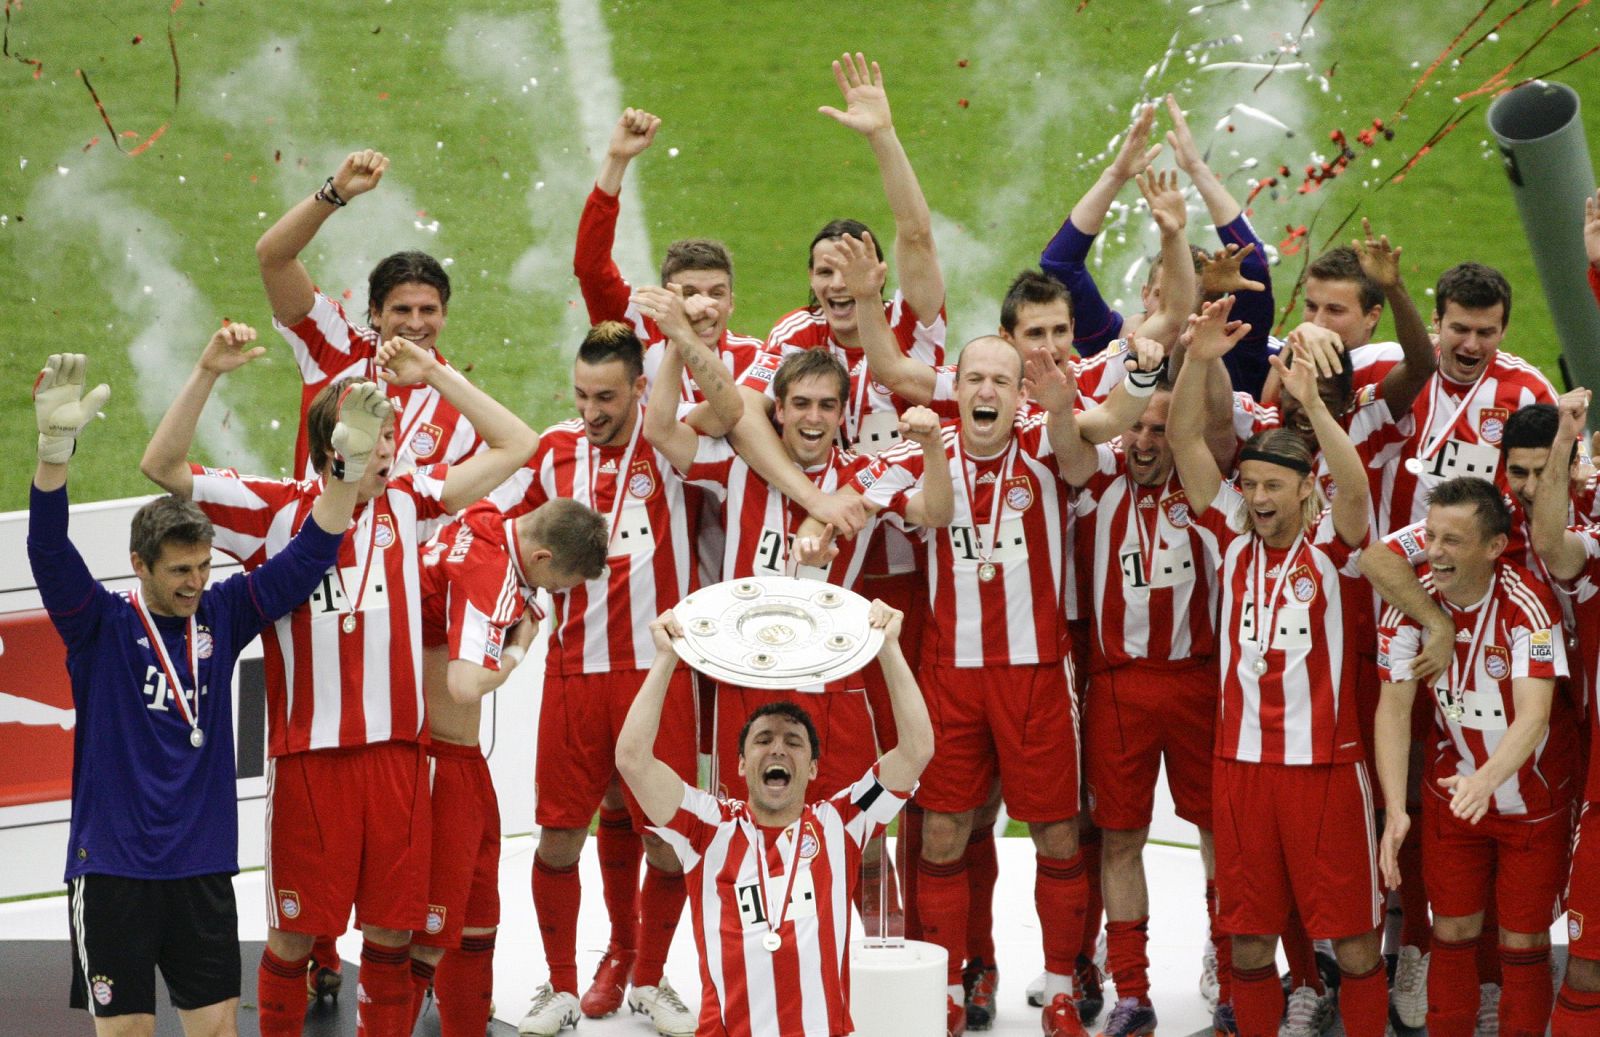 El capitán del Bayern, Van Bommel, levanta el trofeo que acredita a su equipo como Campeón de la Bundesliga.